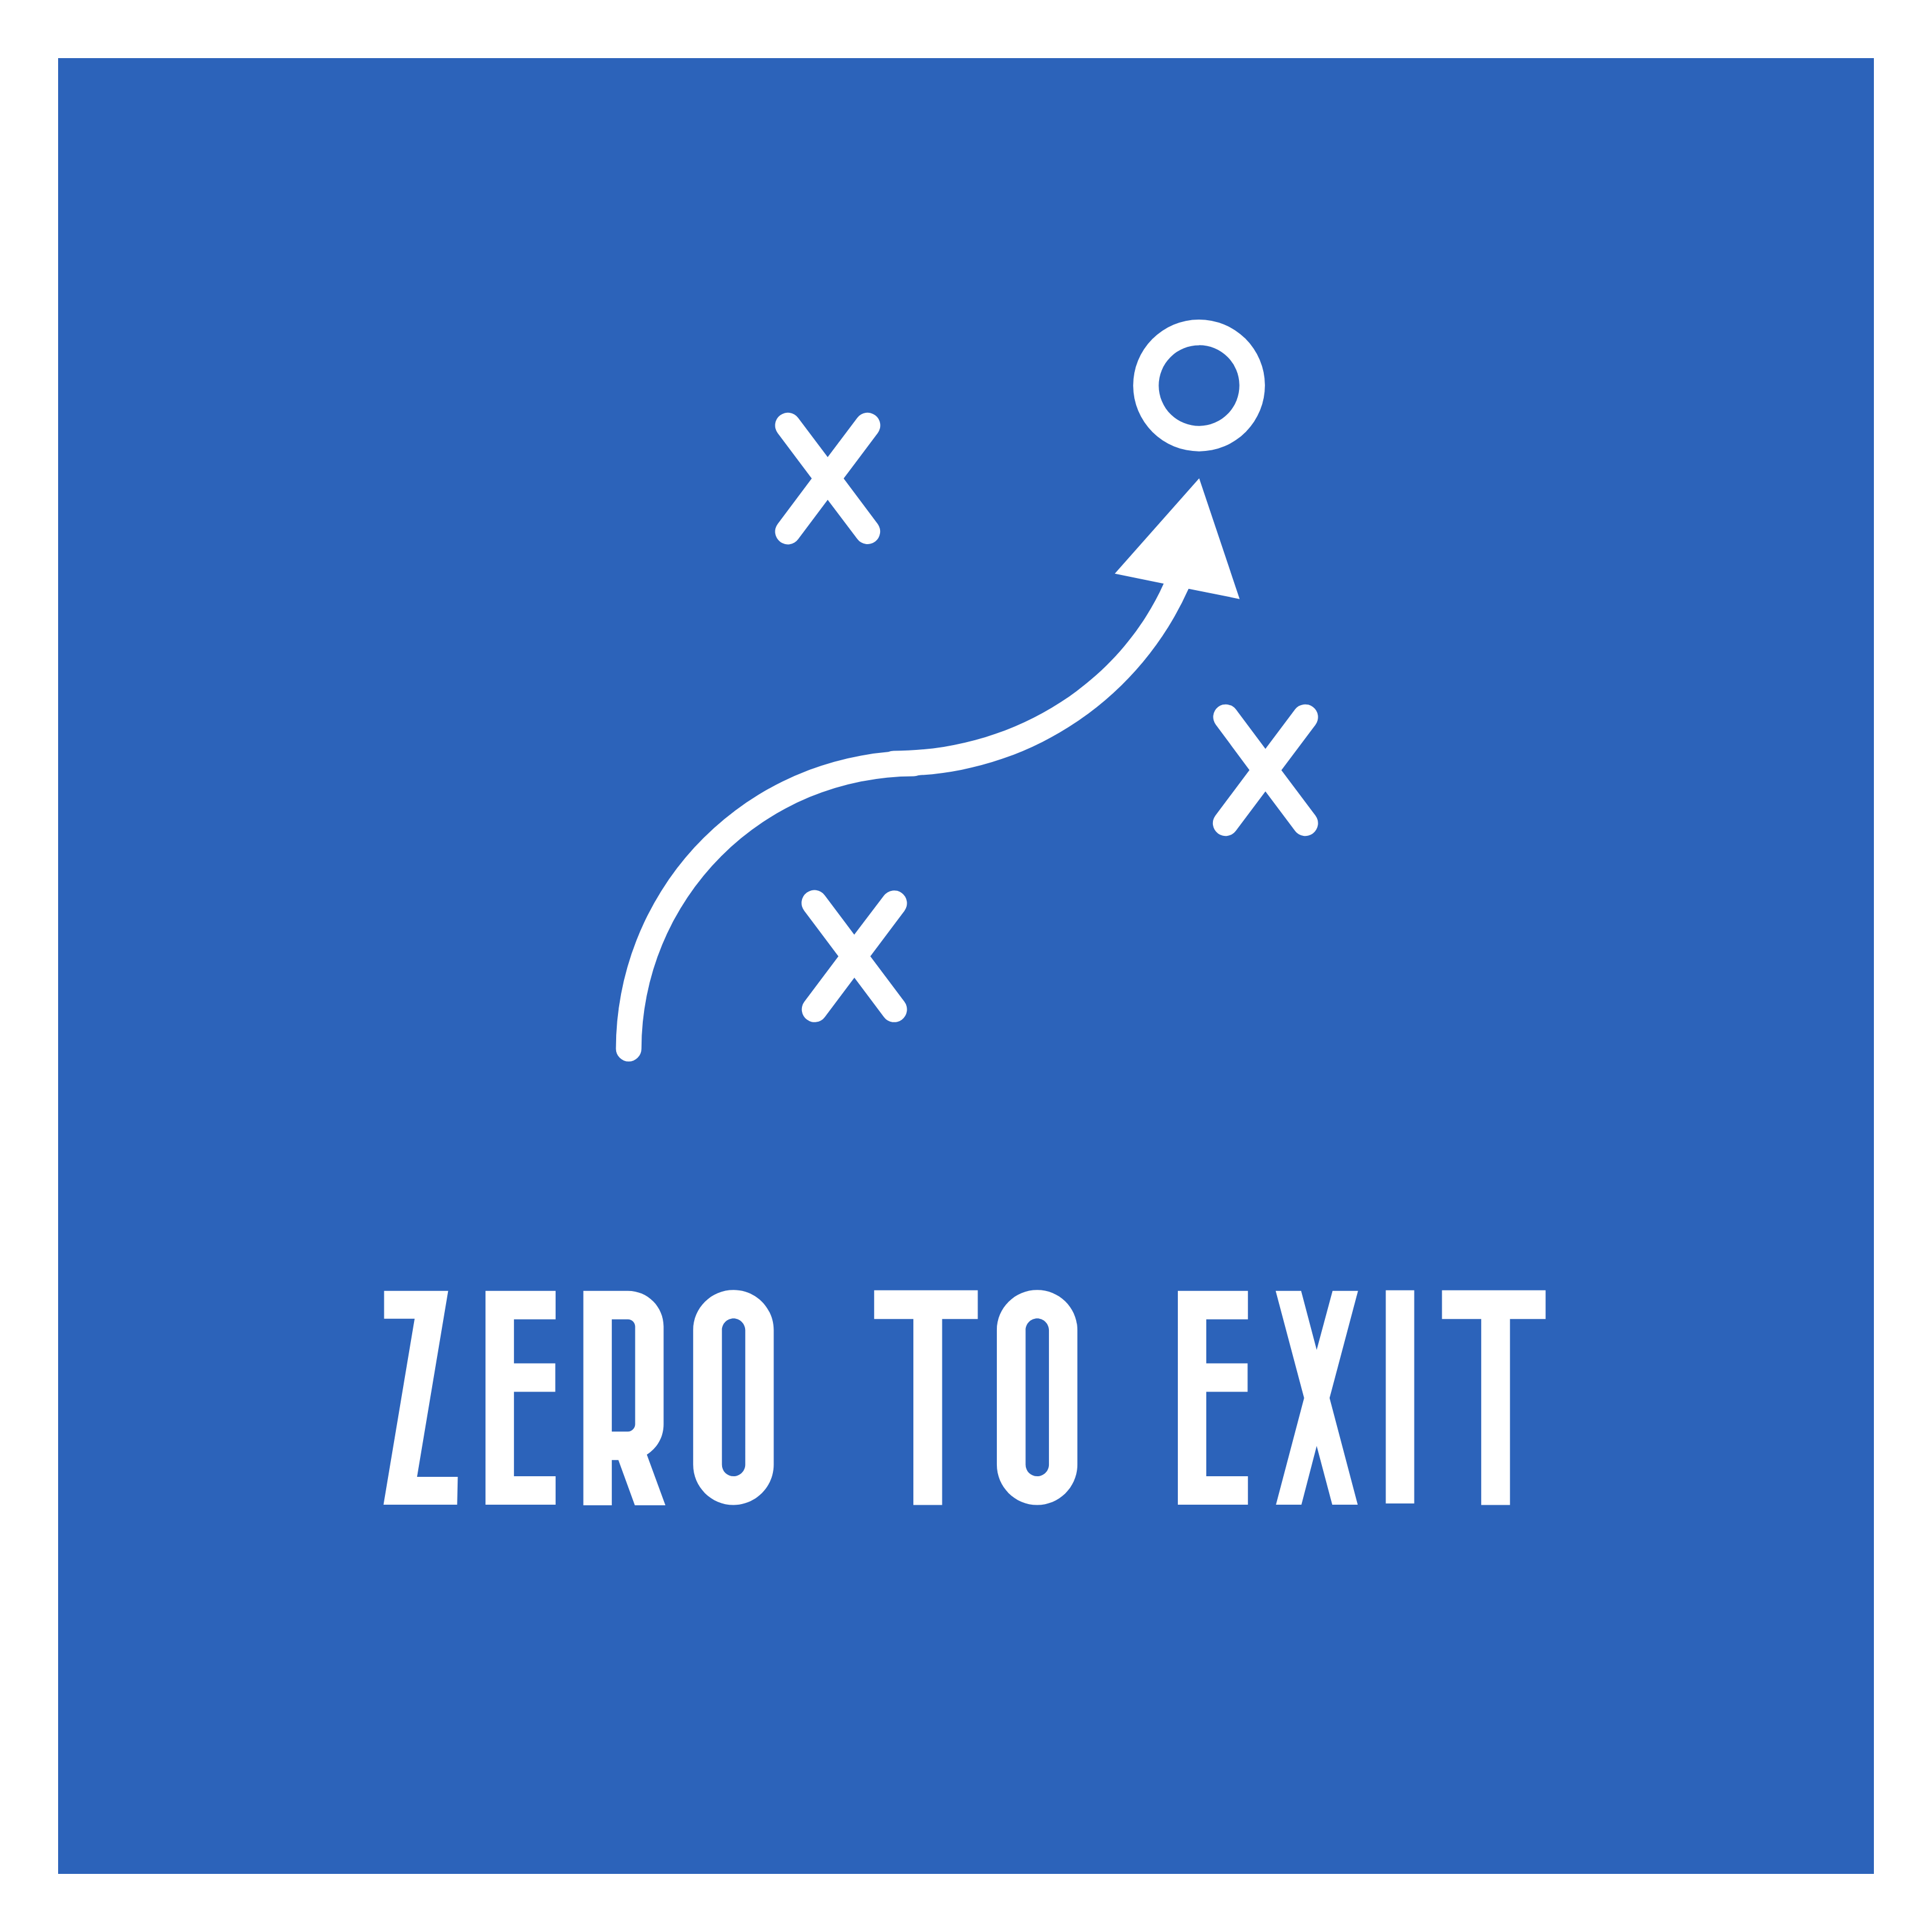 Zero to Exit Ltd